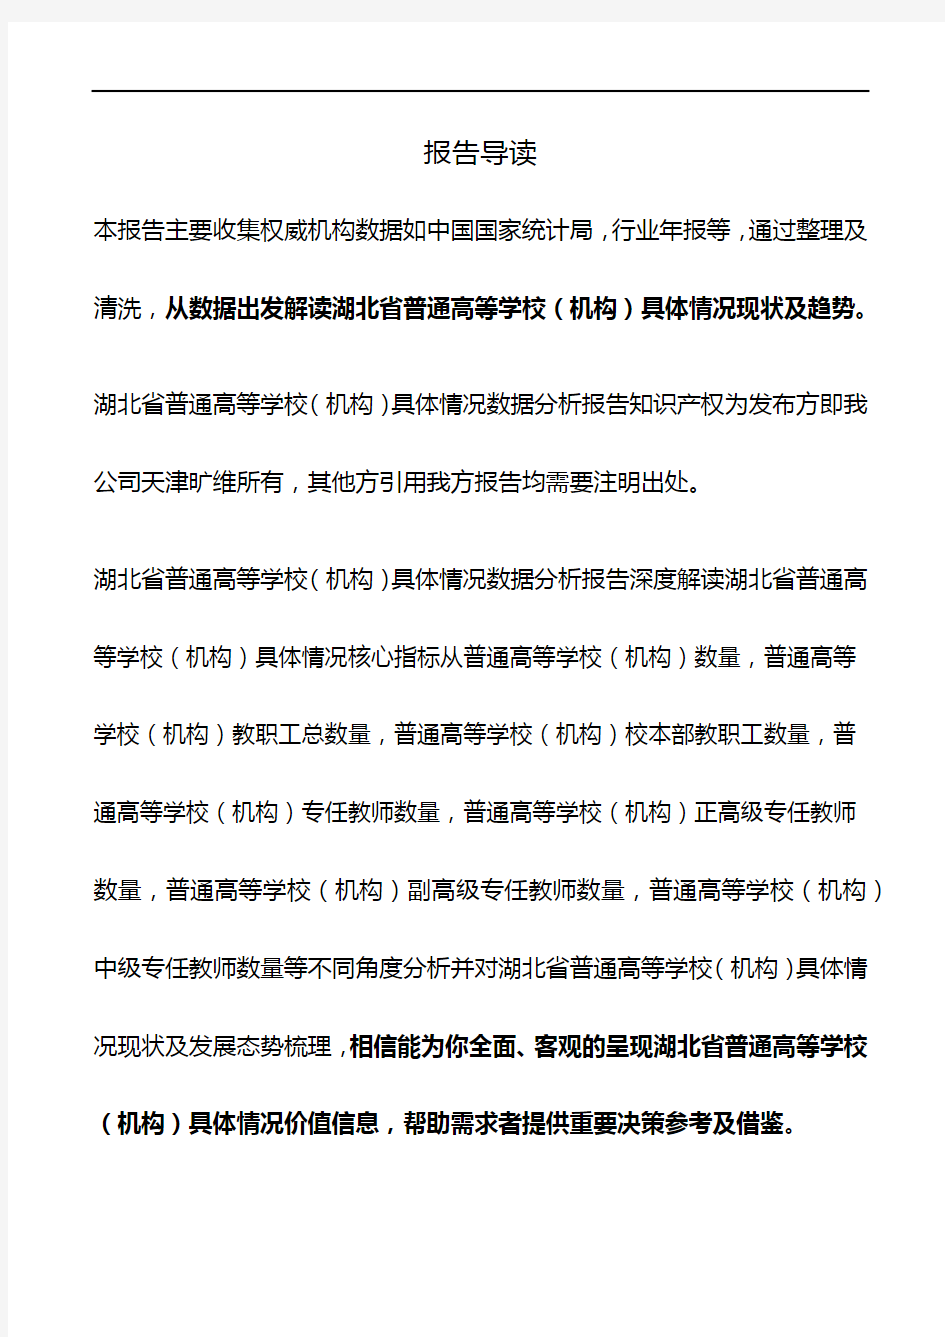 湖北省普通高等学校(机构)具体情况3年数据分析报告2019版